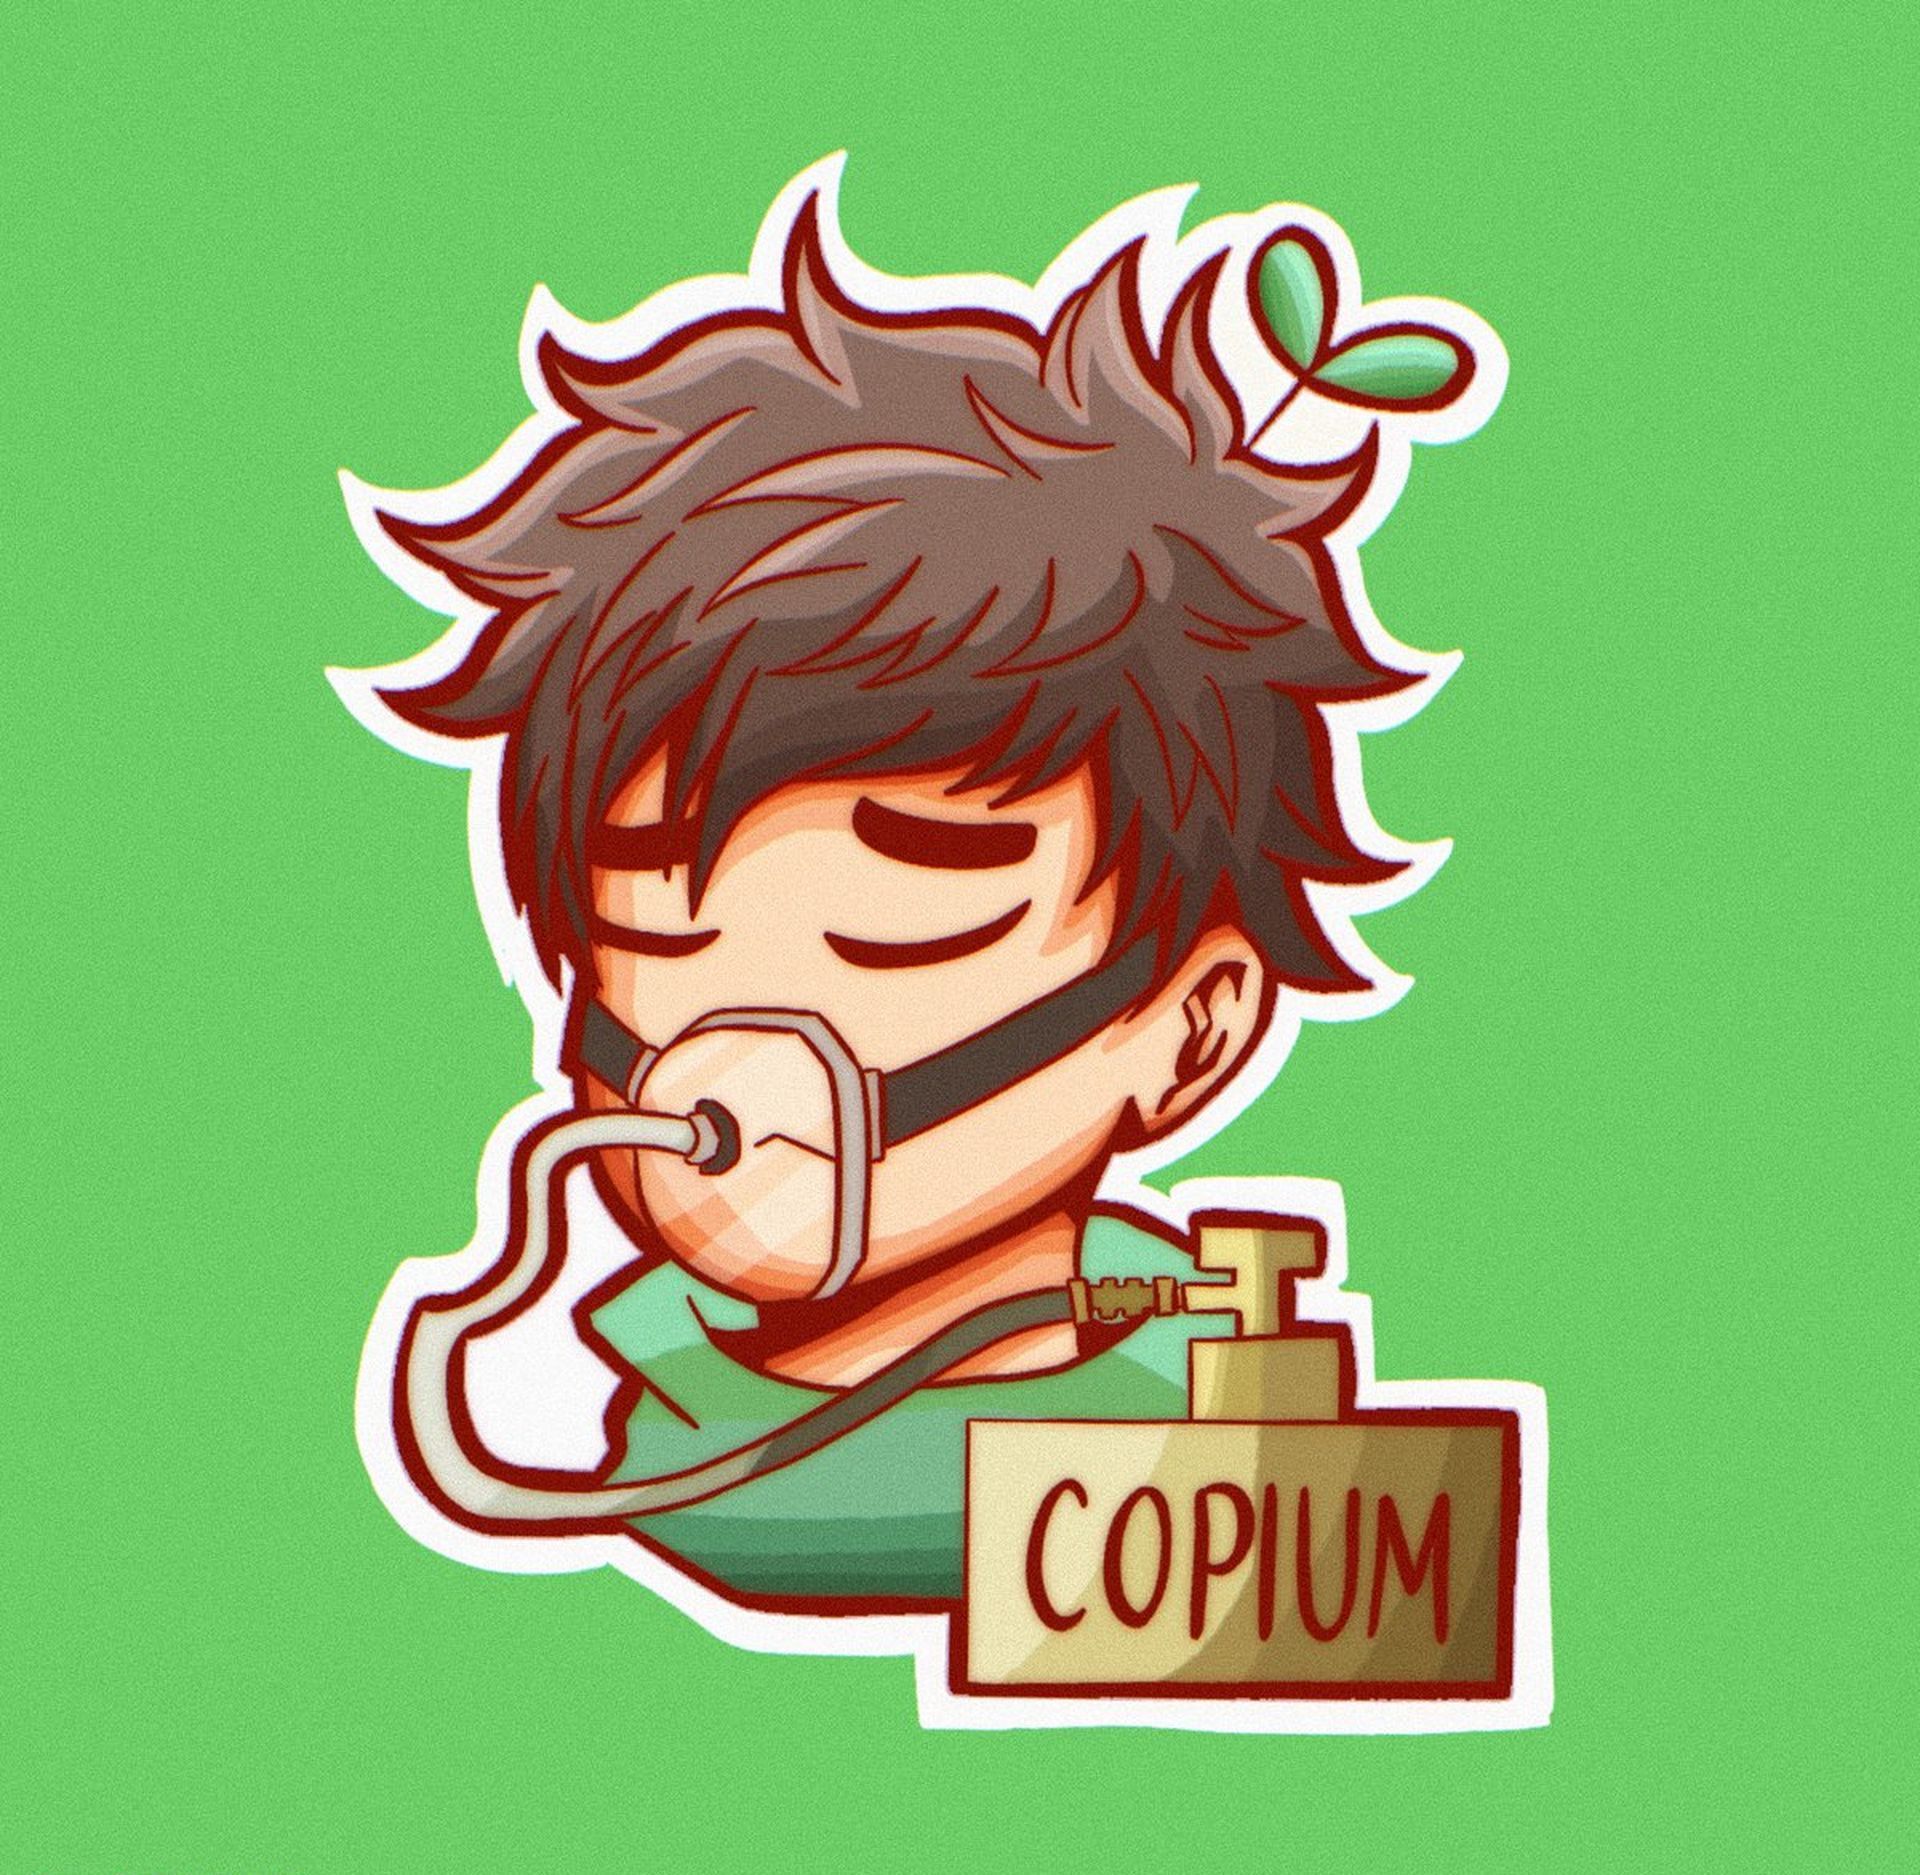 wat betekent copium